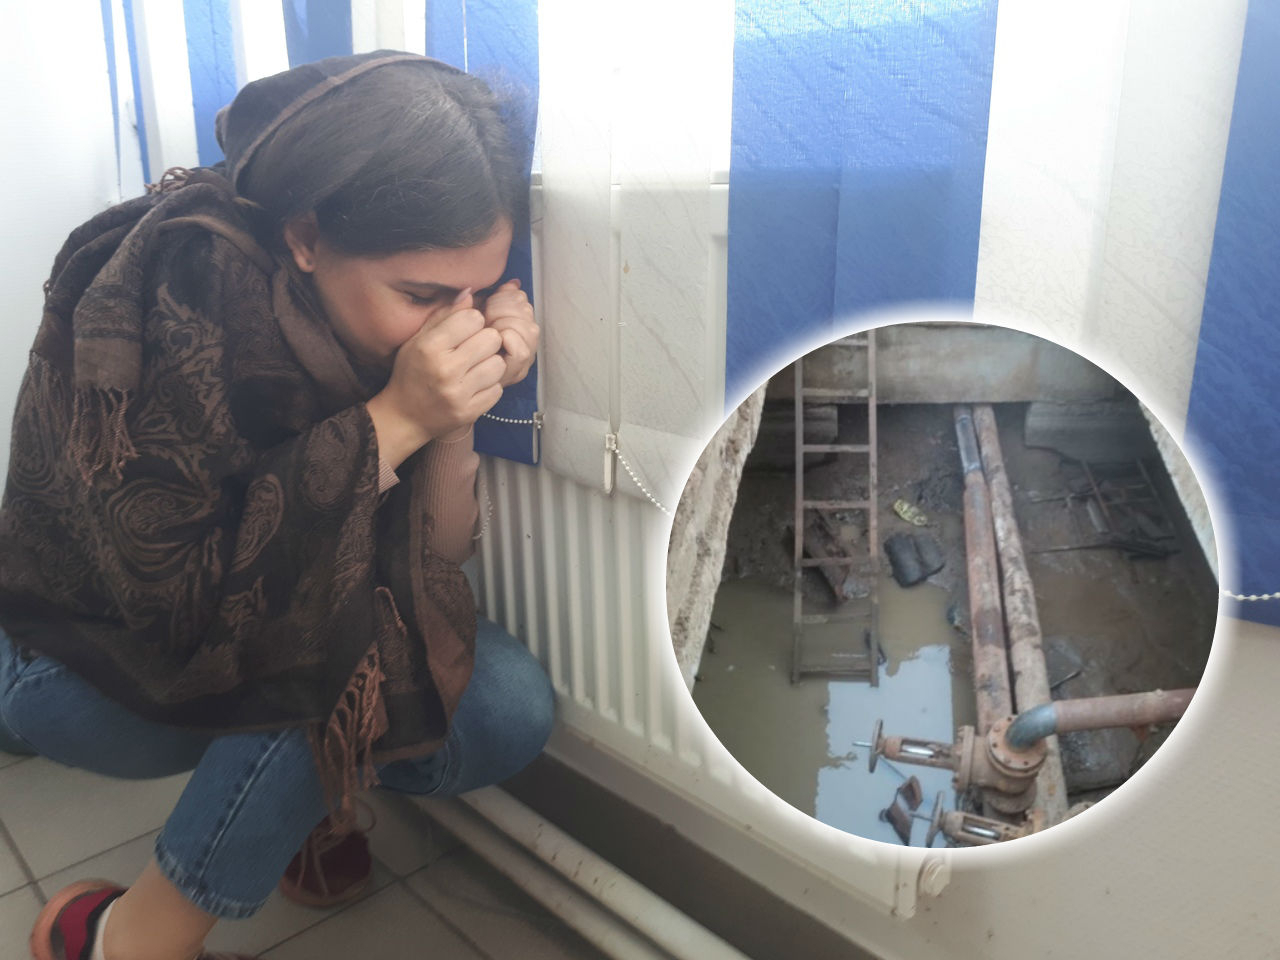 "Нужно тепло, а не перерасчет": ярославцы бунтуют против мерзлоты в домах